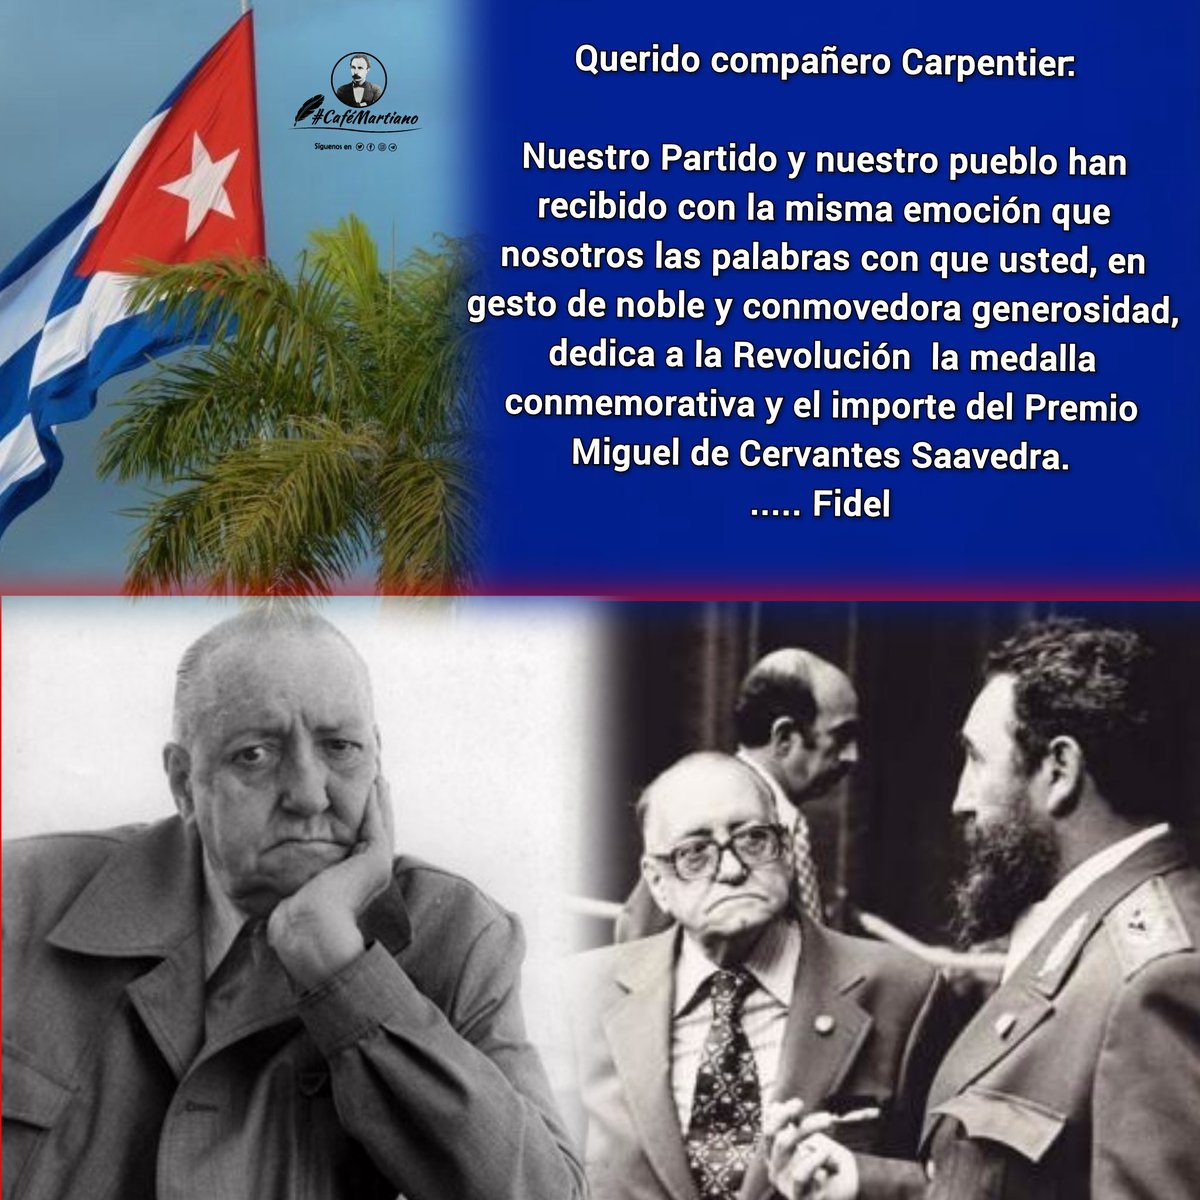 Buenos días 🇨🇺 #CaféMartiano 24/4/1980 fallece Alejo Carpentier ✍️'Es preciso que el talento fructifique, y esparza sus frutos por el mundo'. En homenaje a un excepcional escritor cubano padre de 'lo real maravilloso' y músico de la palabra. #CubaViveEnSuHistoria